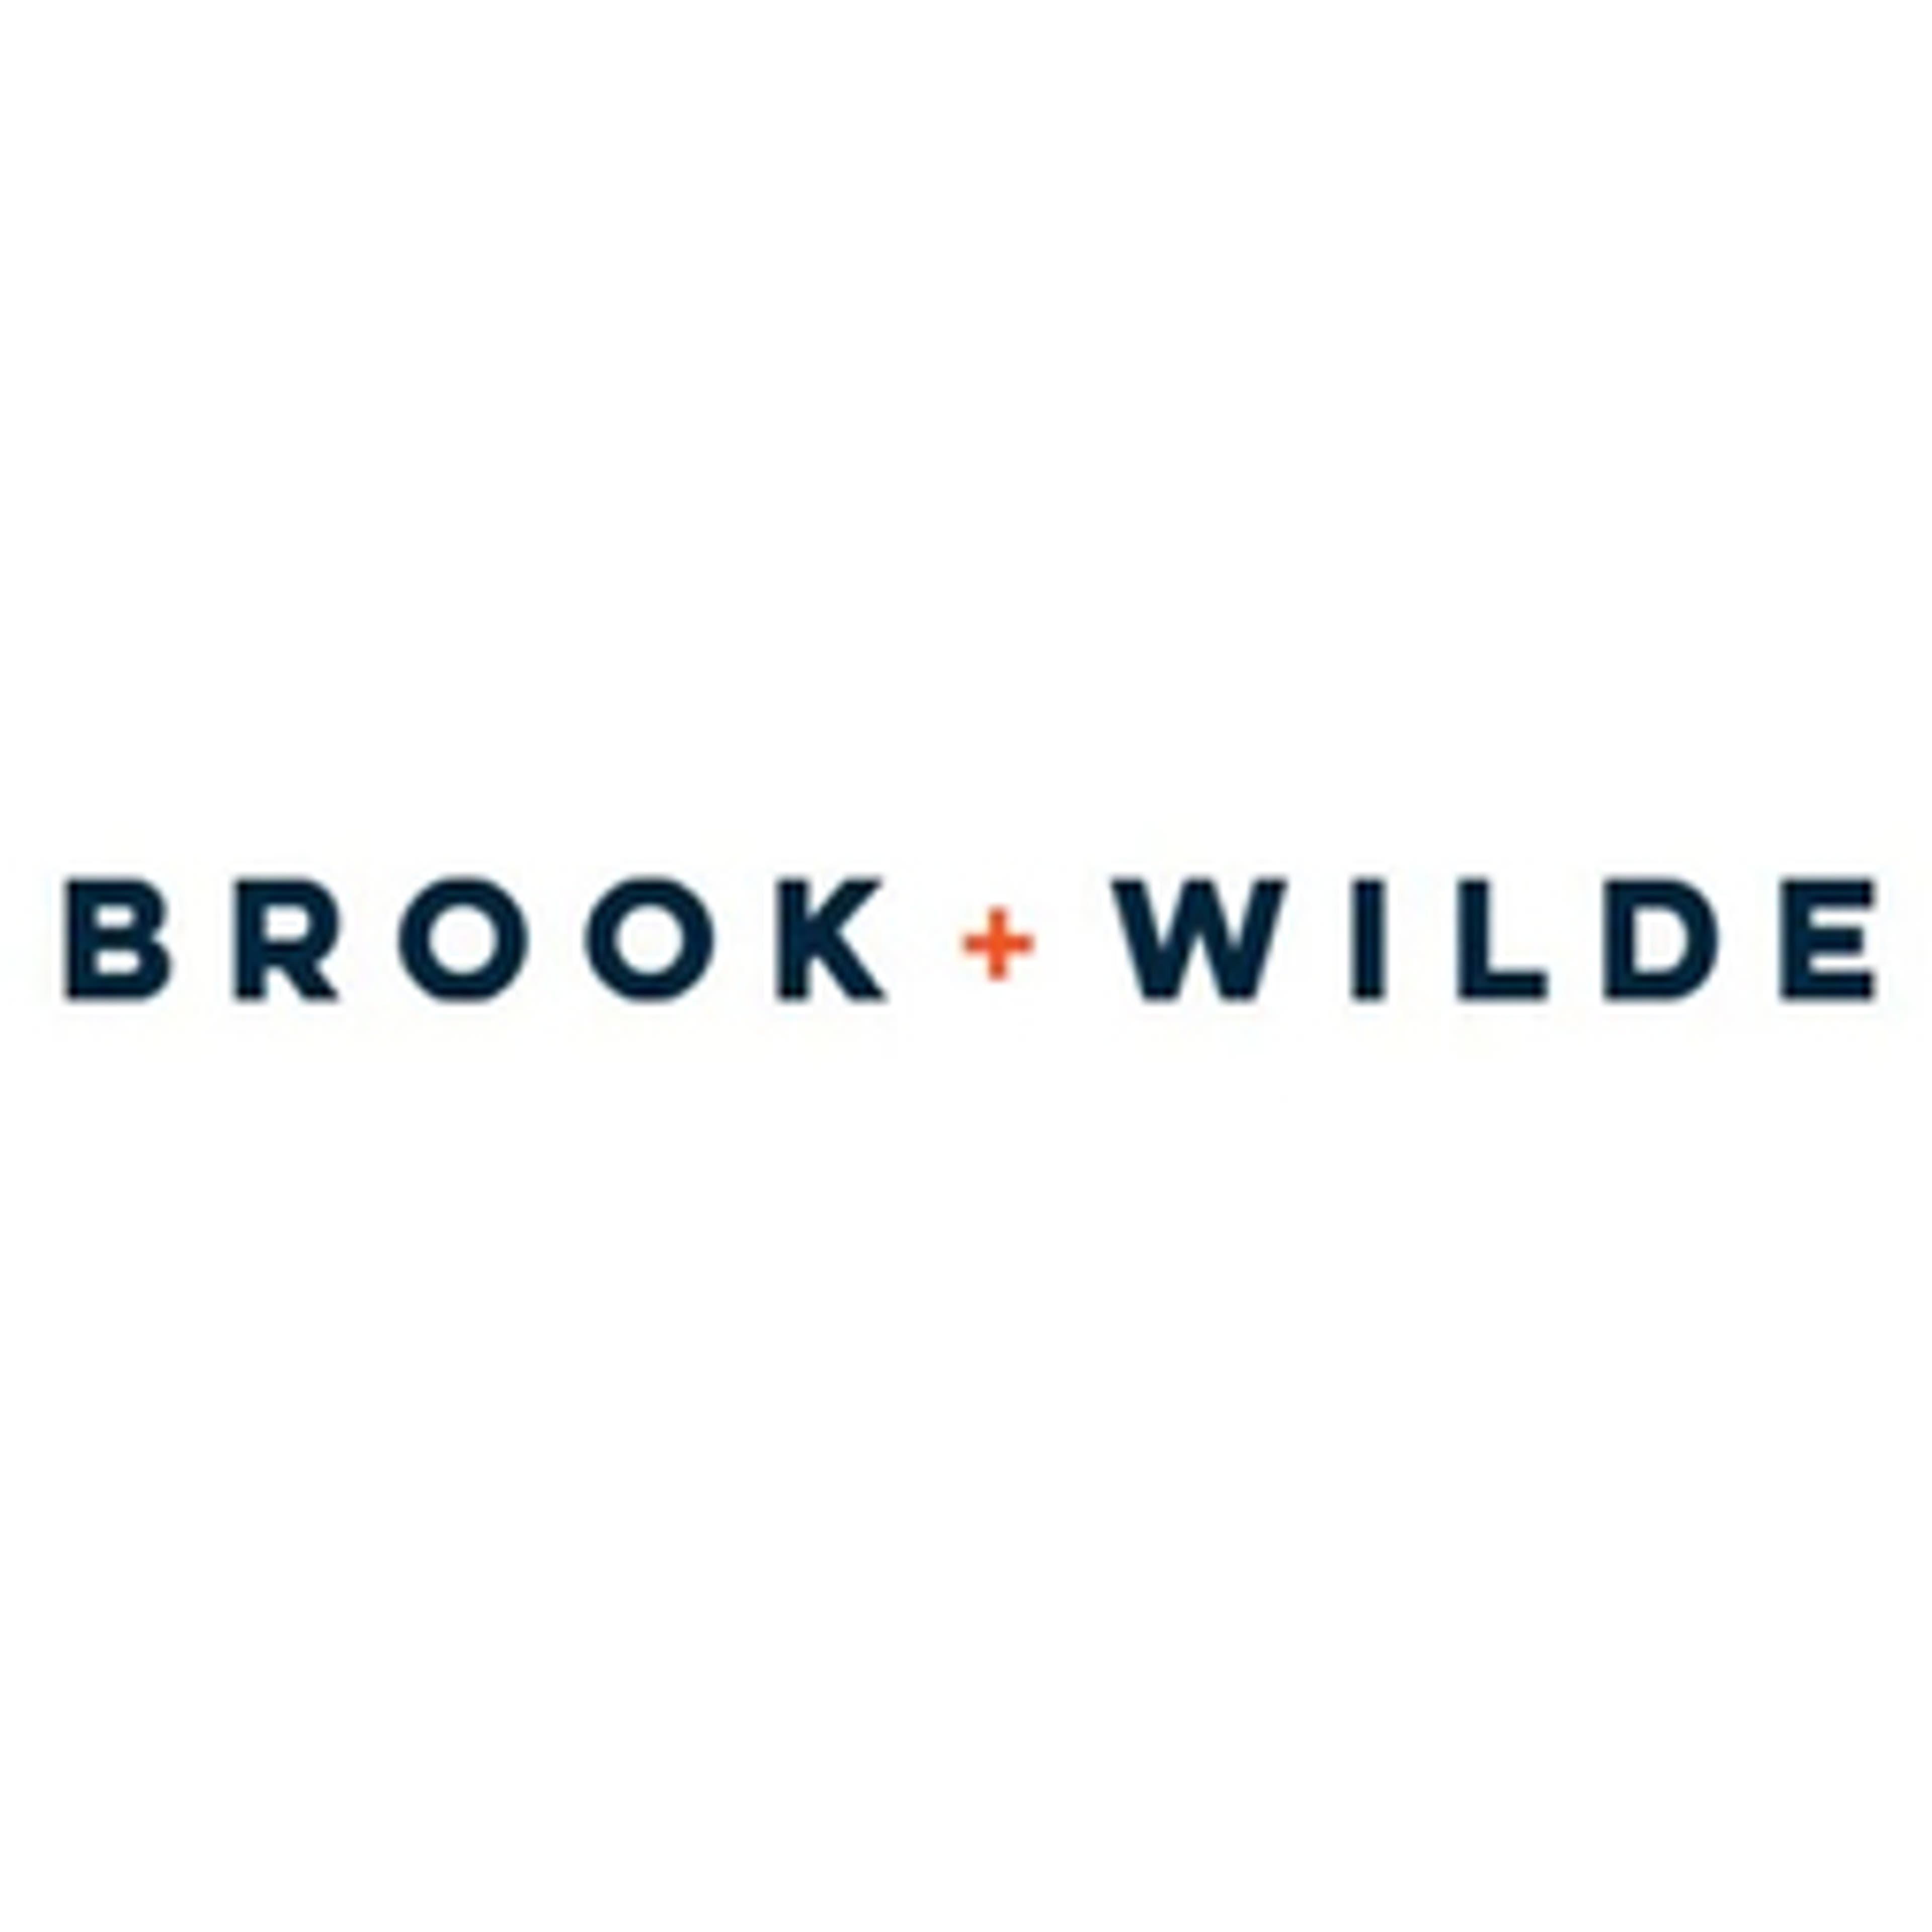  Brook + Wilde 